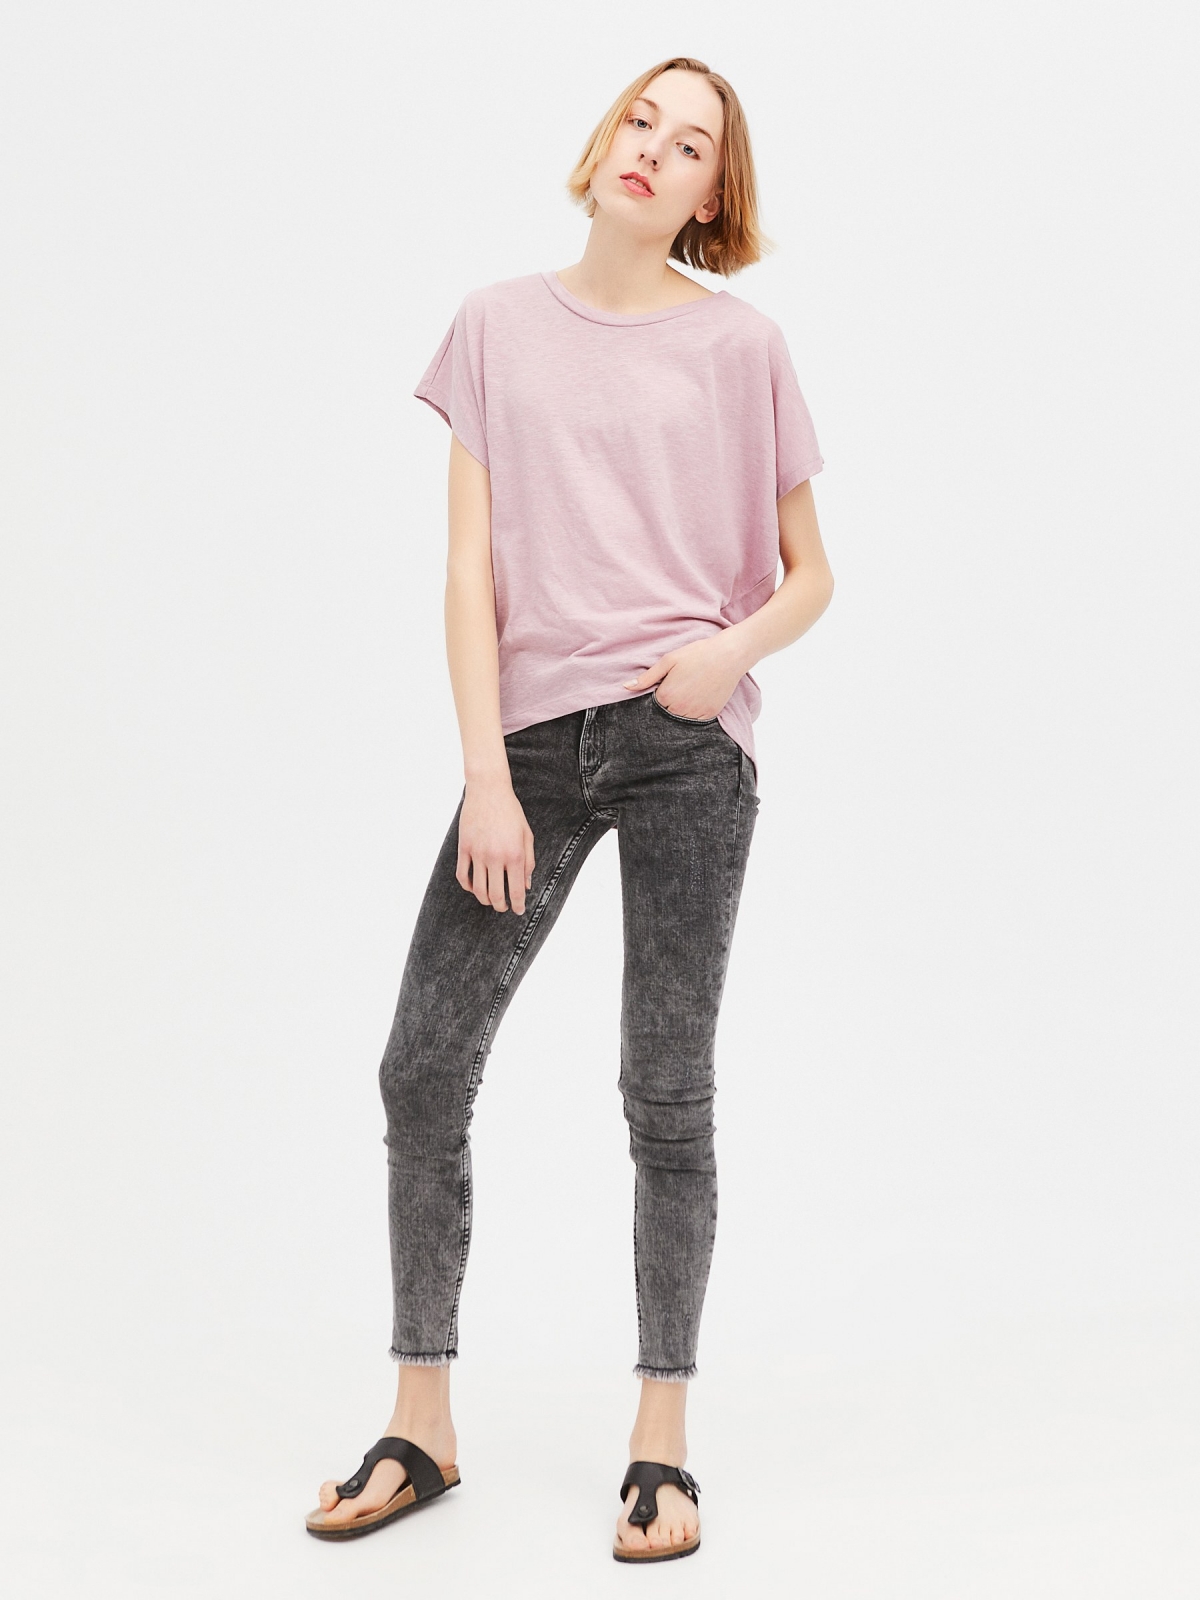 Asymmetric bottom T-shirt light pink front view